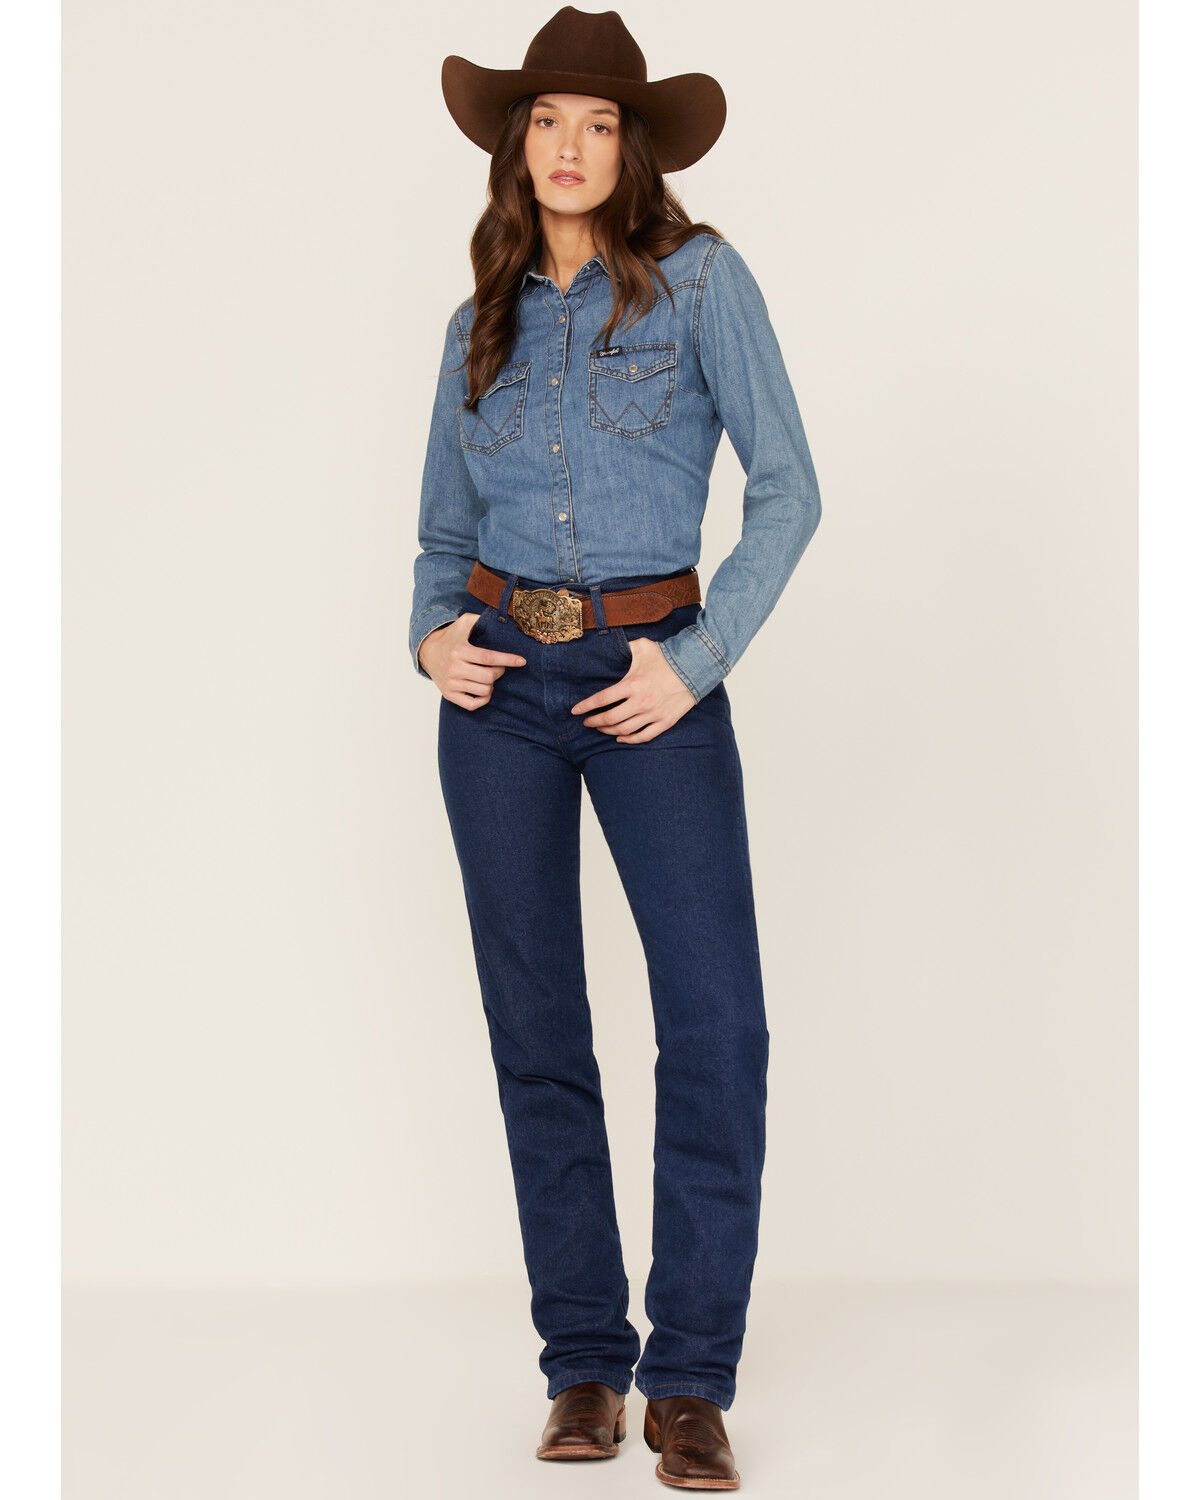 cowboy cut slim fit wrangler jeans